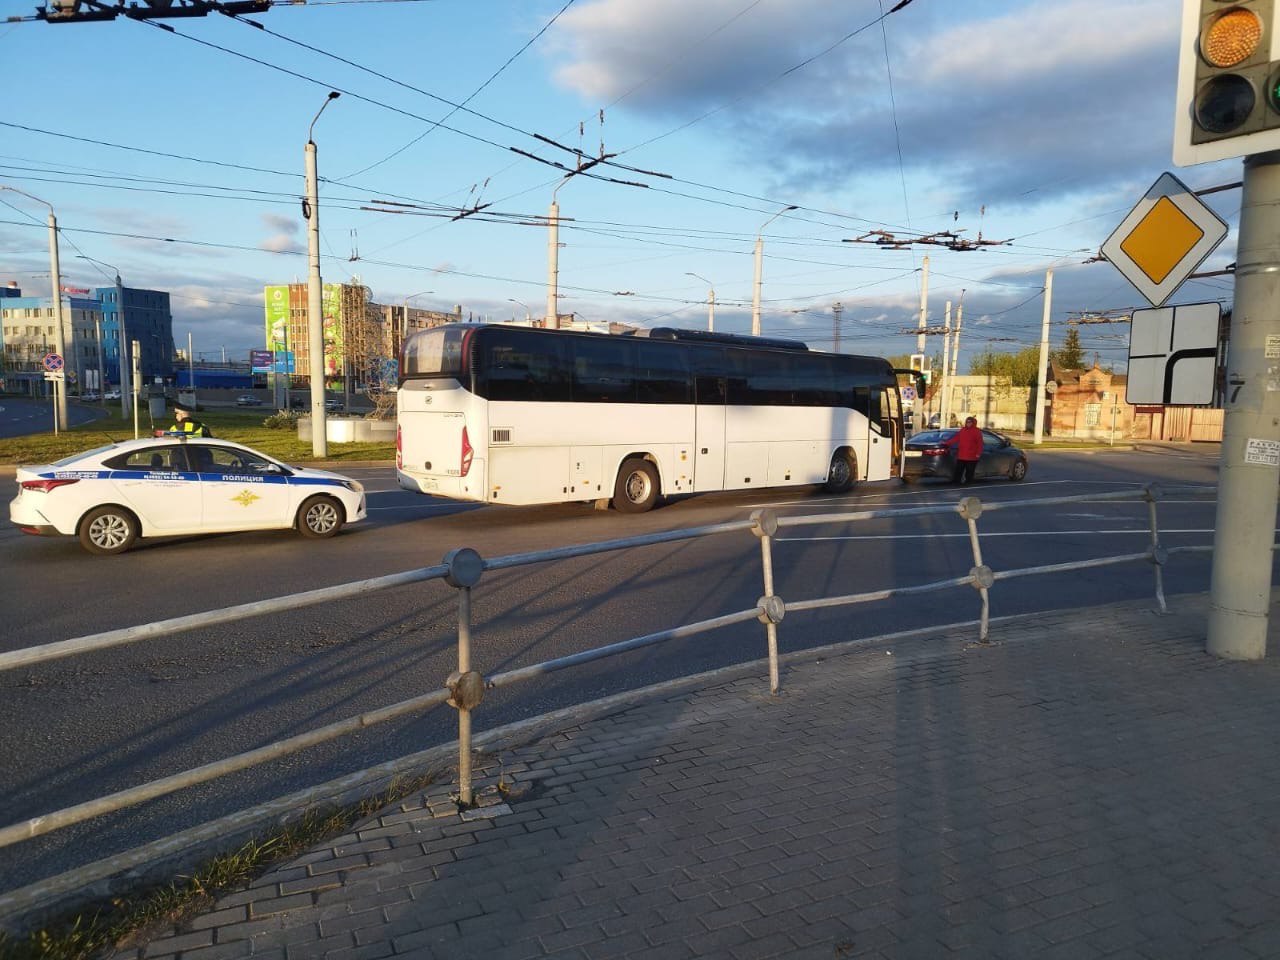 Во Владимире пенсионерка на легковушке влетела в пригородный автобус